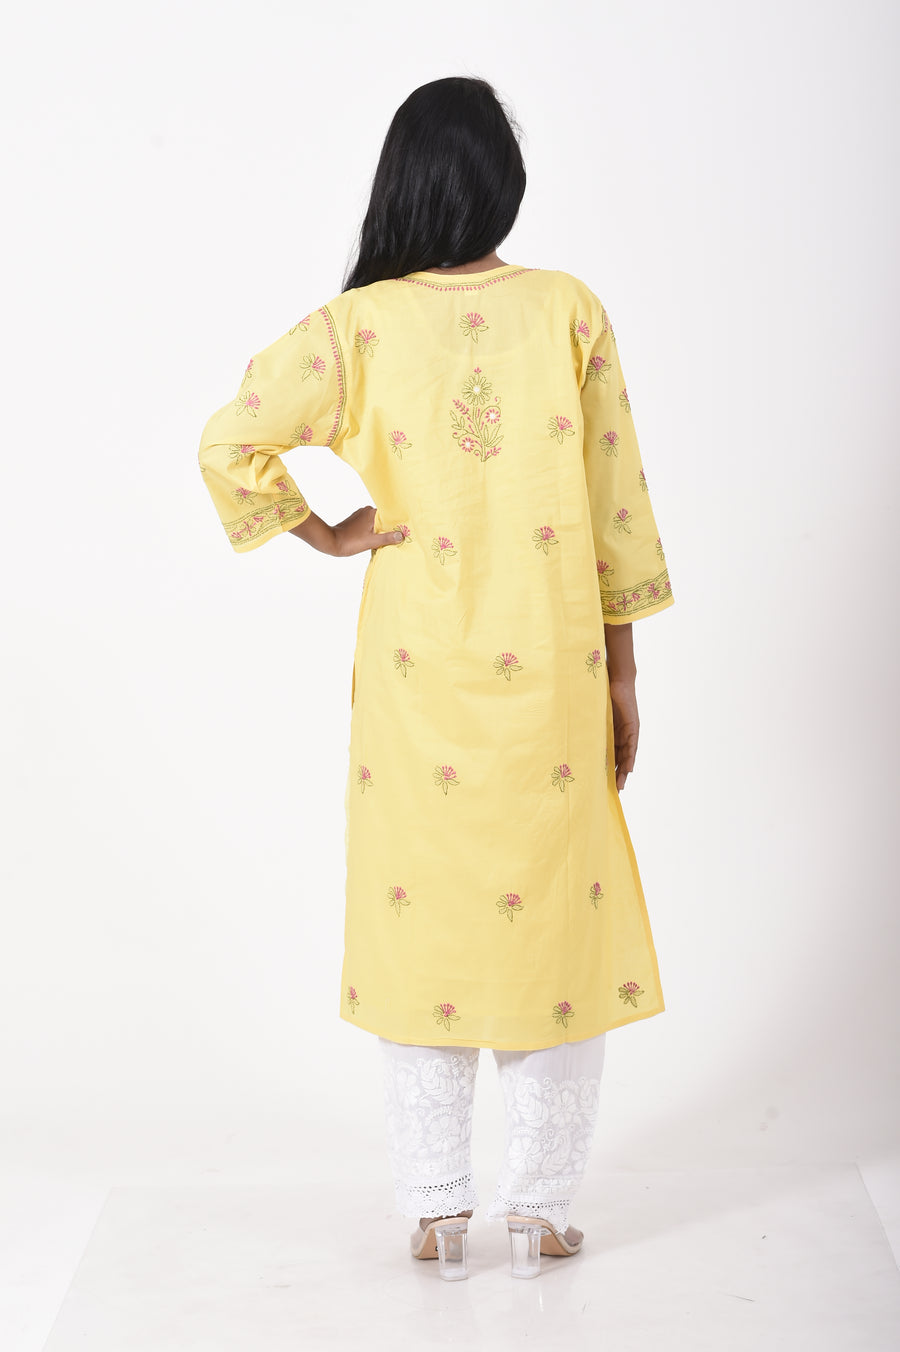 Lucknow Chikan Emporium Hand embroided cotton Chikankari Kurti yellow